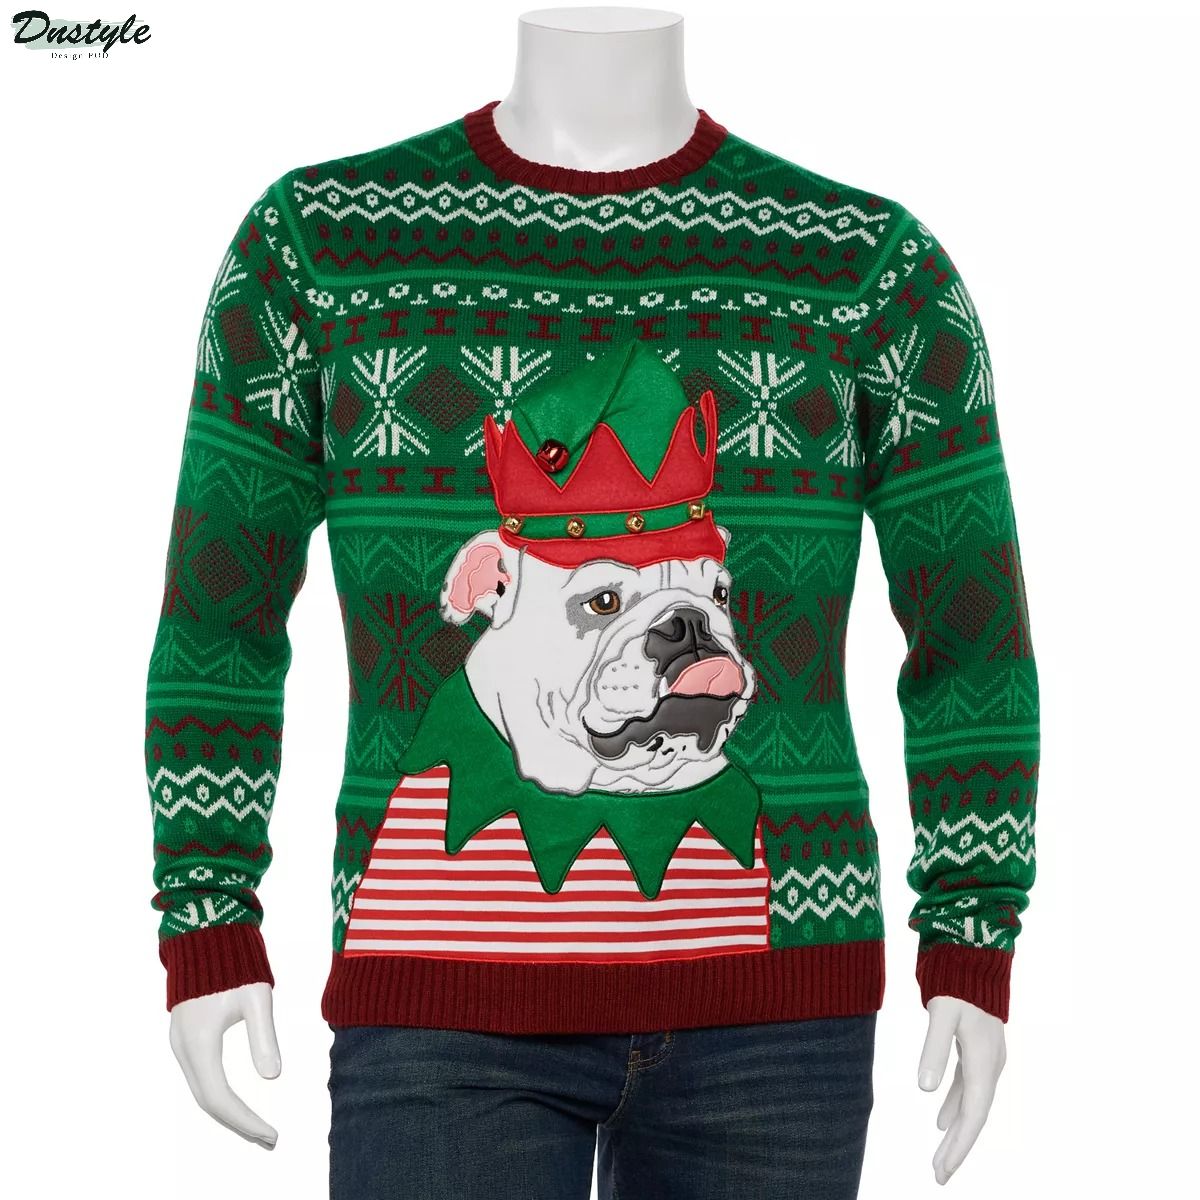 Bulldog ugly christmas sweater